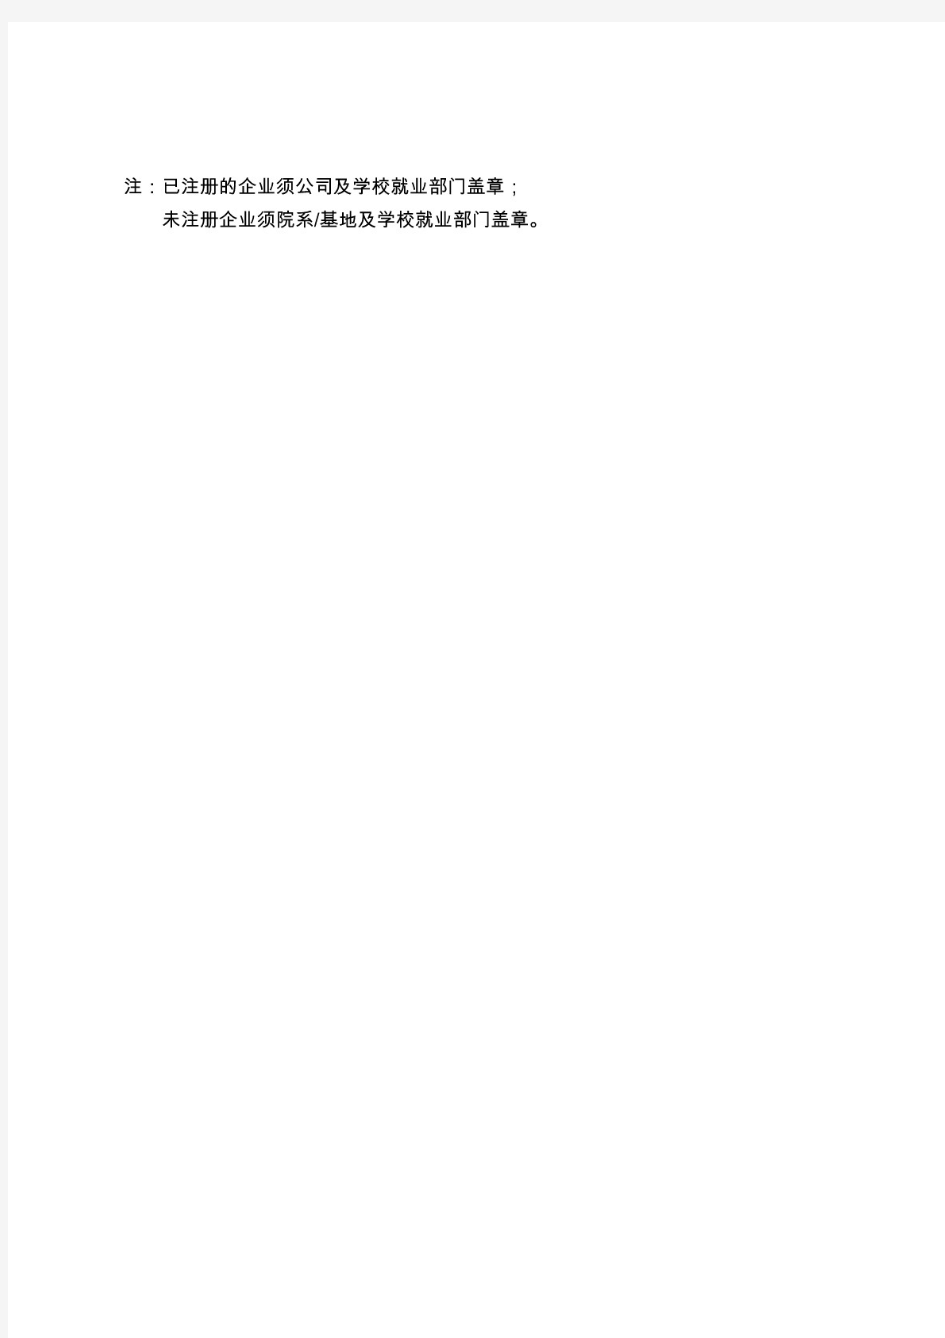 重庆市高校毕业生自主创业基本信息登记表